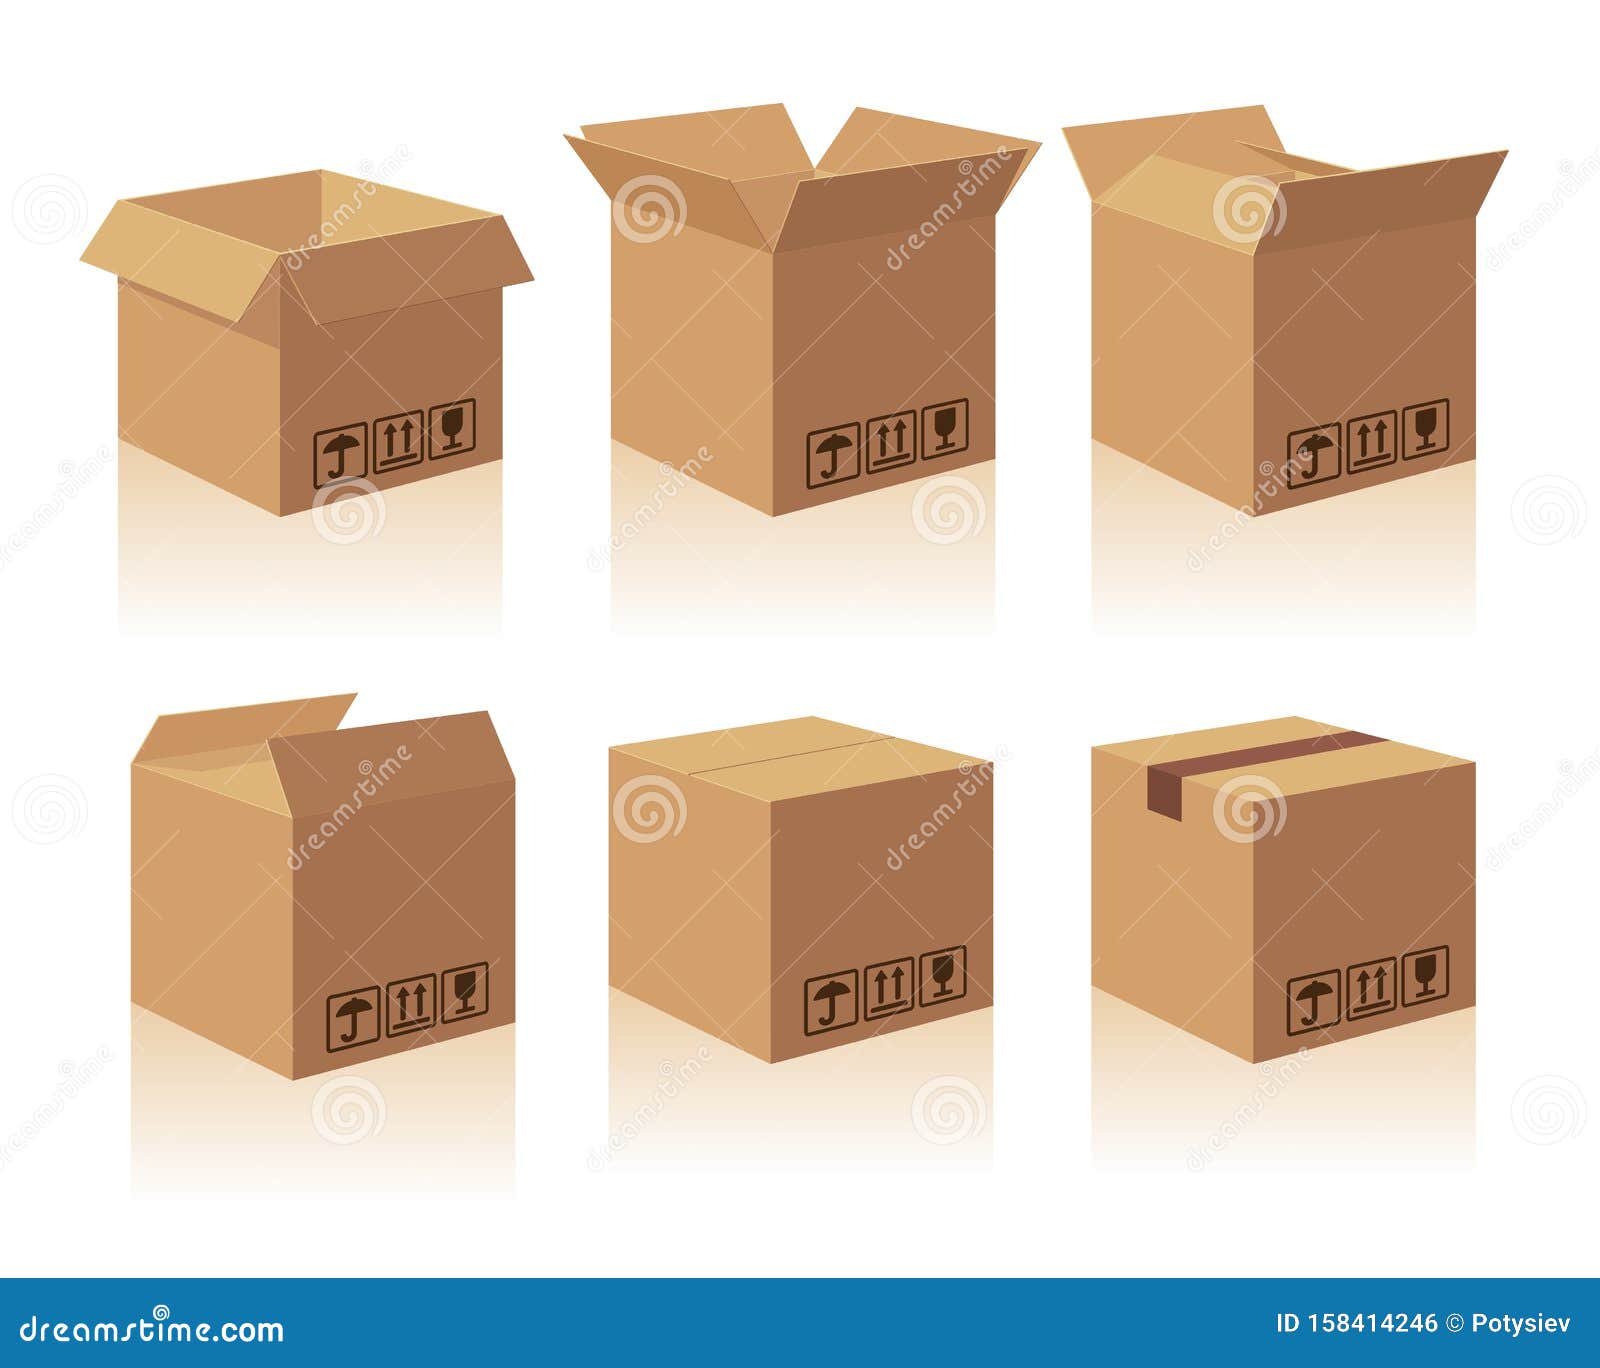 Есть коробка изображенная. Картонная коробка закрытая и открытая. Картонные коробки на белом фоне. Картонная коробка знаки. Открытая и закрытая коробка на белом фоне.